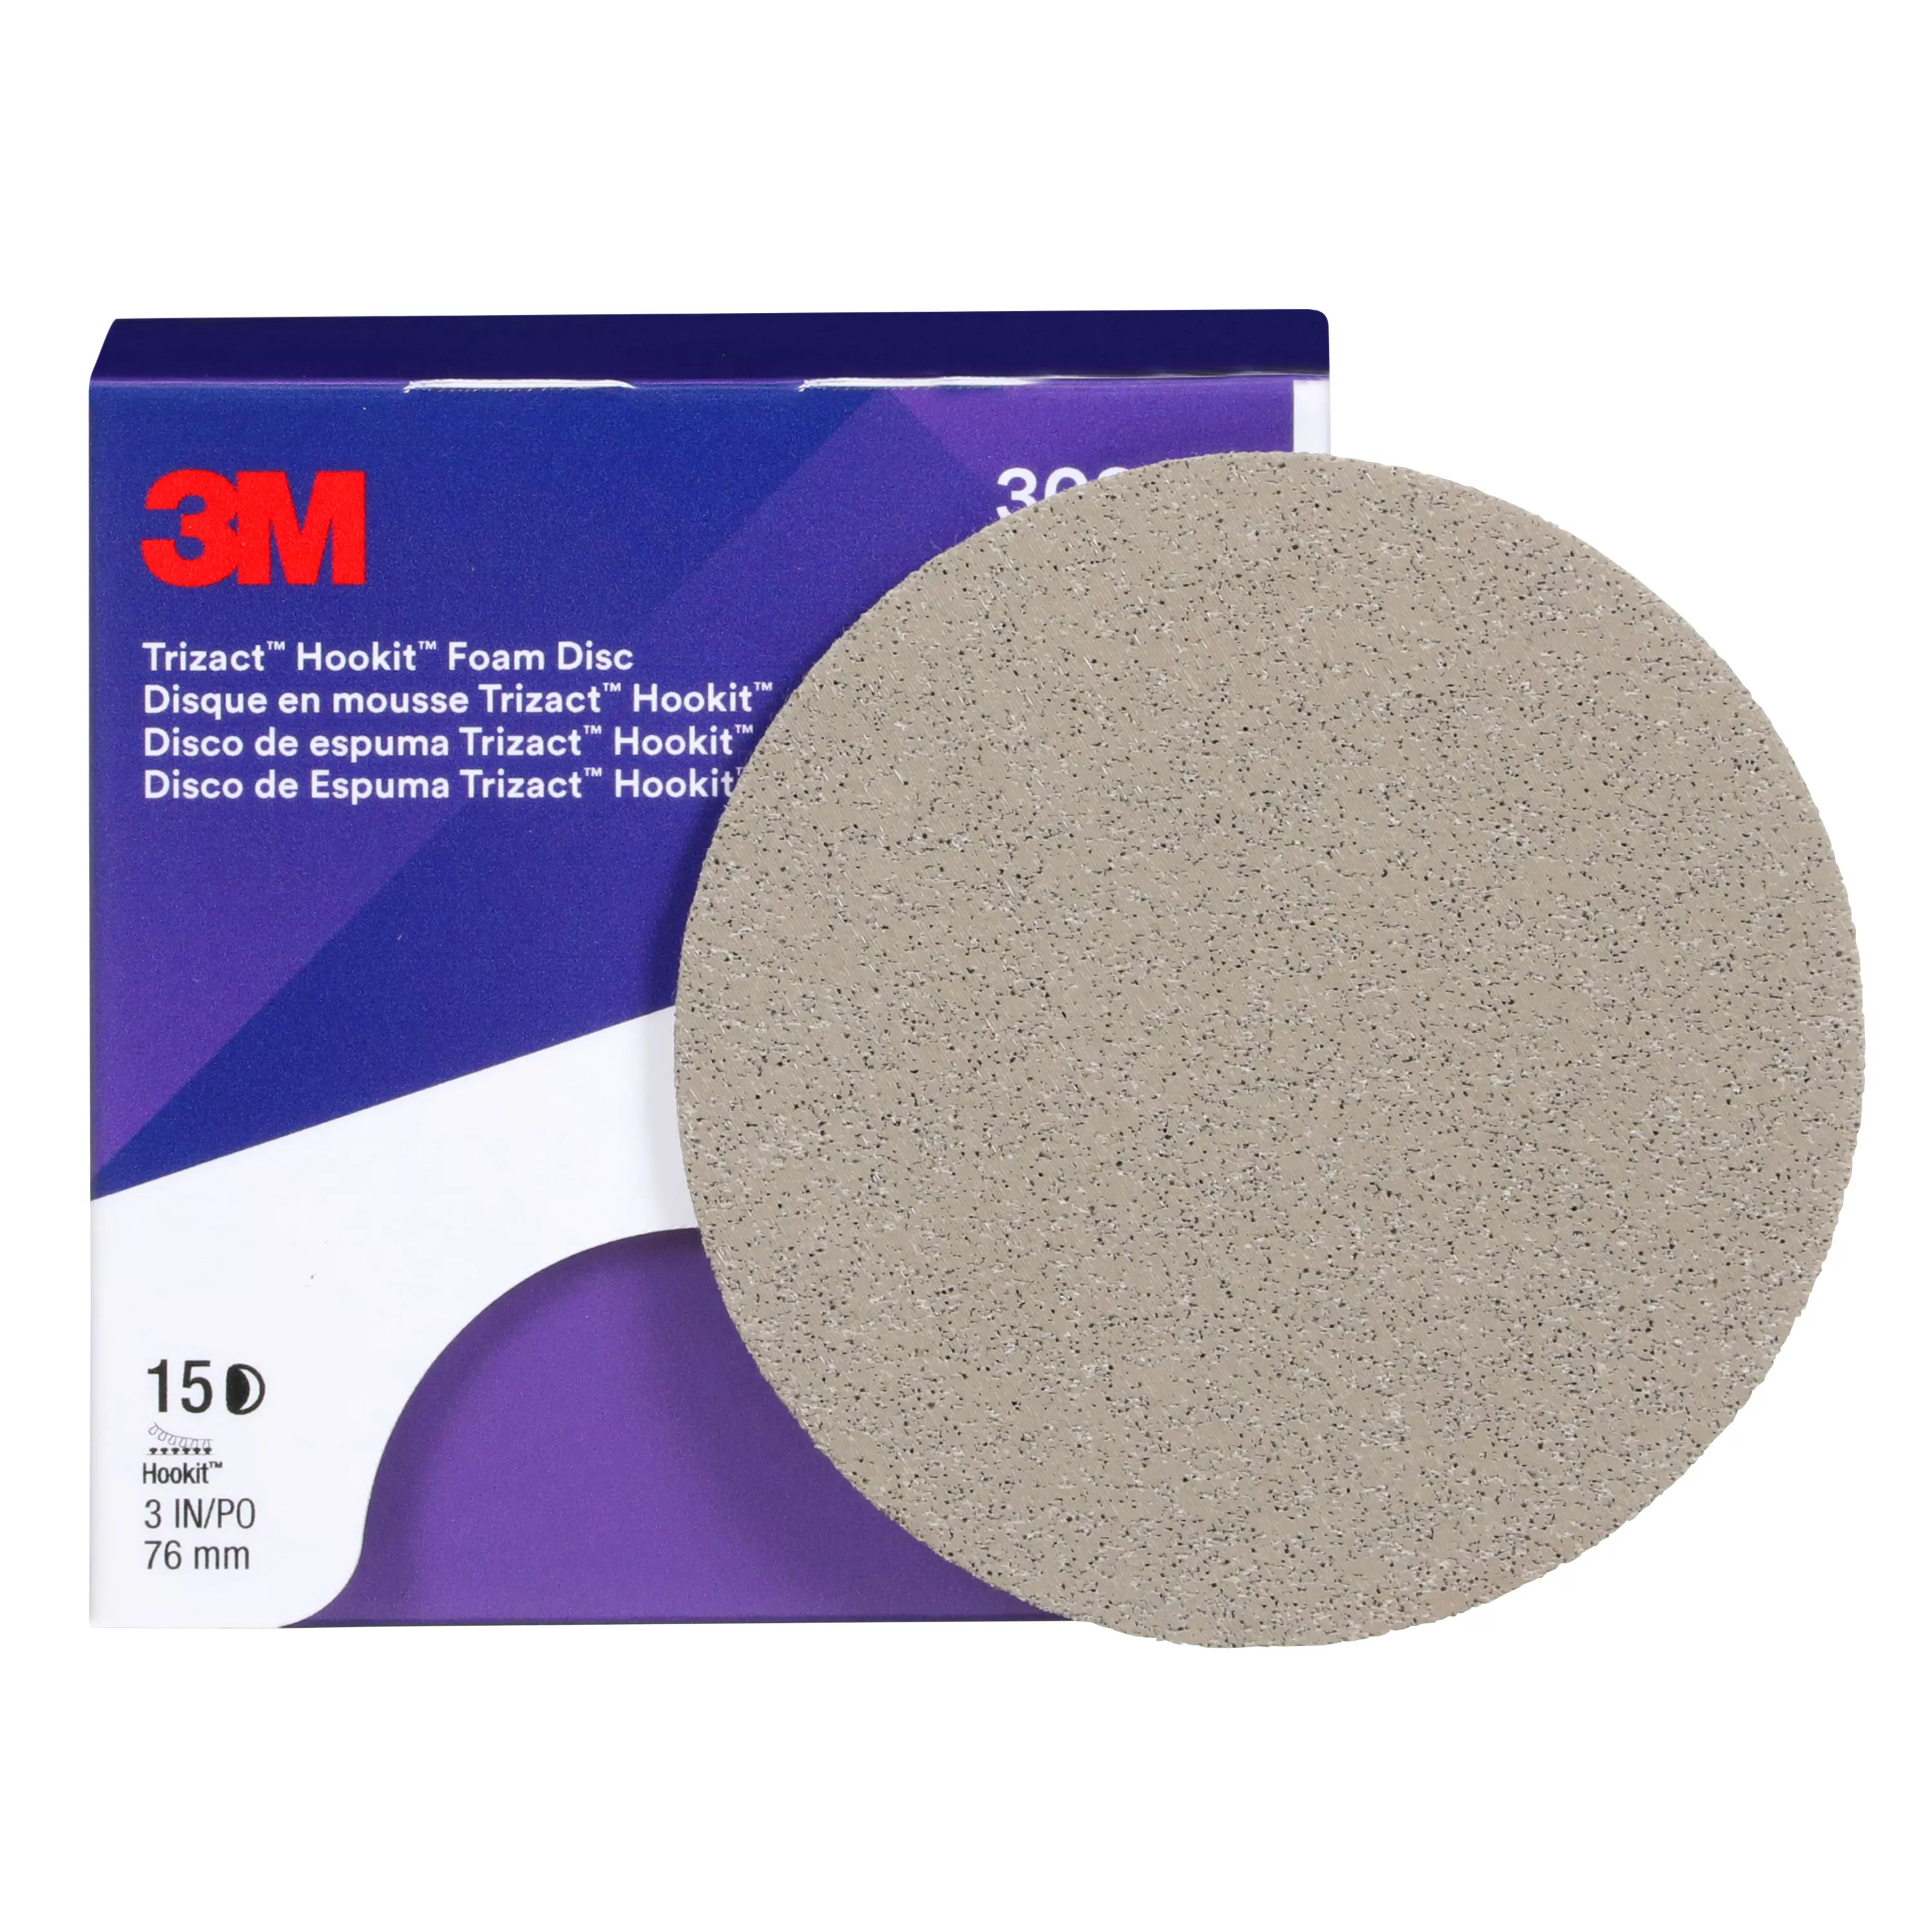 SKU 7100193763 | 3M™ Trizact™ Hookit™ Foam Disc 30804